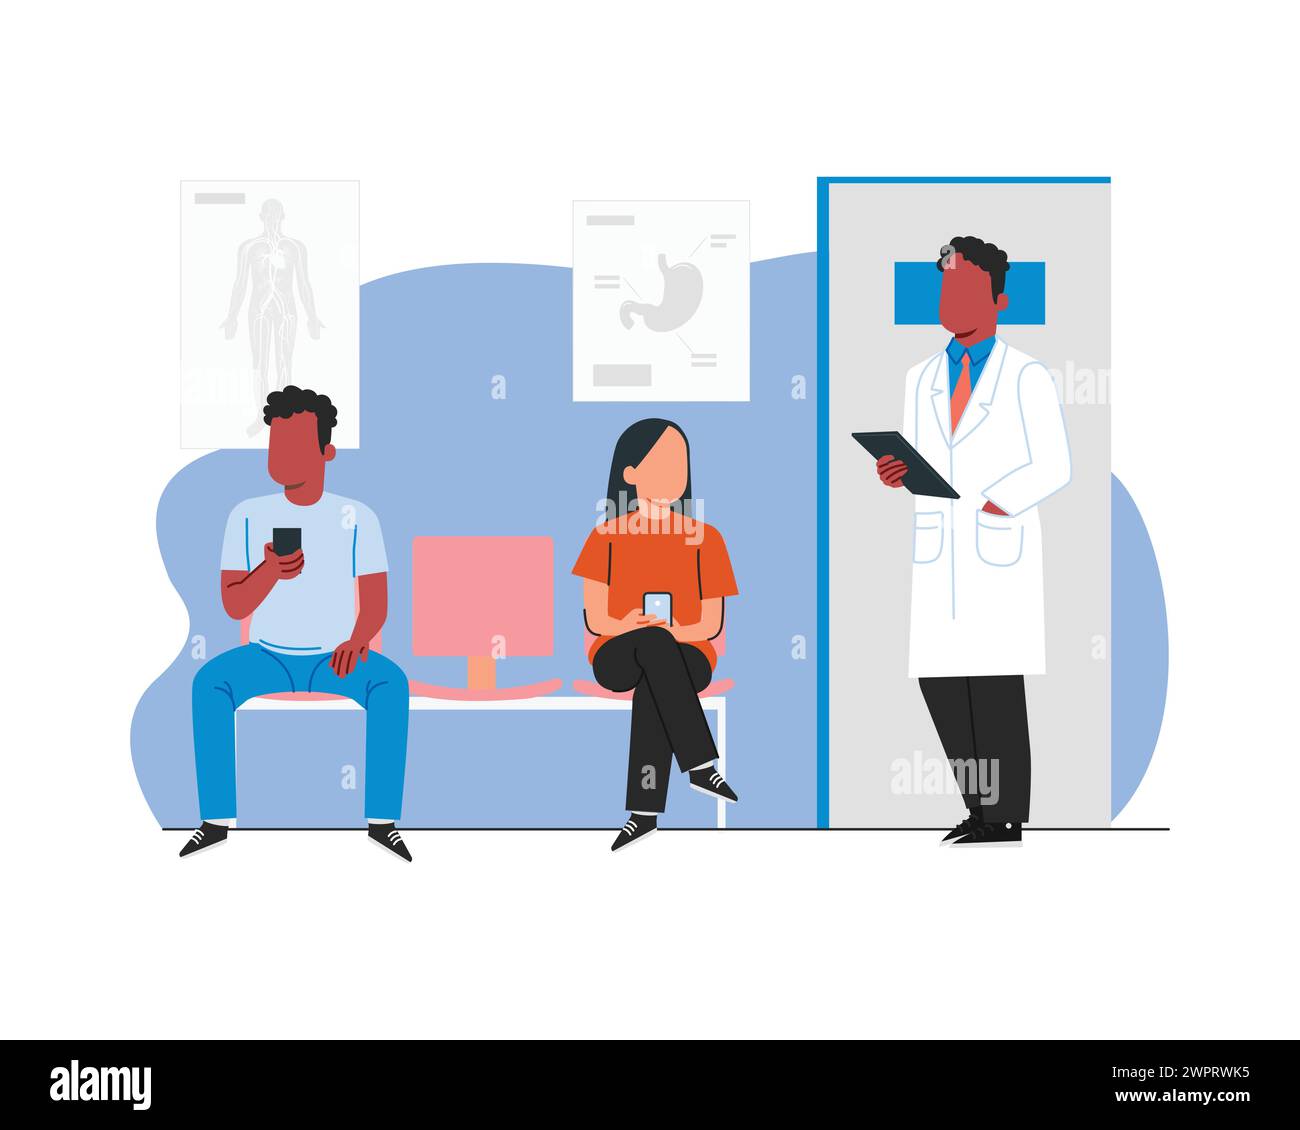 Männlicher Arzt im weißen Labormantel mit seinen männlichen und weiblichen Patienten im Wartezimmer des Krankenhauses. Flaches Design Zeichenvektor-Illustrationsdesign Stock Vektor